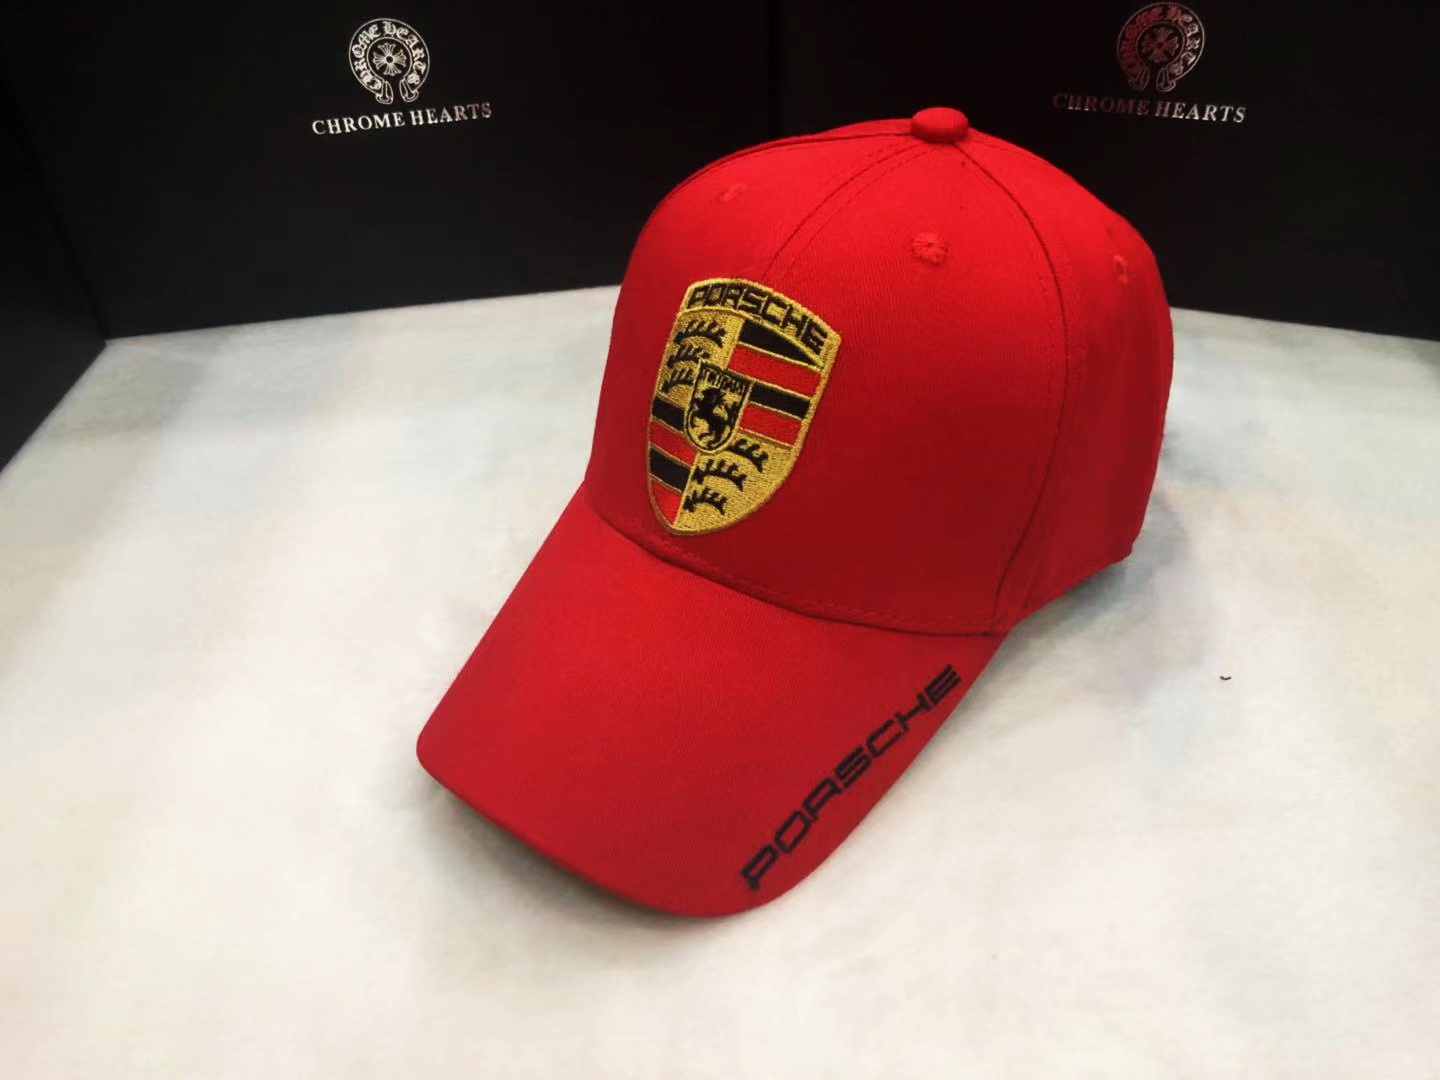 พิเศษสุดๆ!! พร้อมส่ง !!! หมวกแก๊ป Porsche Motorsport Cap AA20 CAP ผ้าใยสังเคราะห์ ดำ ขาว เขียวขี้ม้า น้ำเงิน แดง